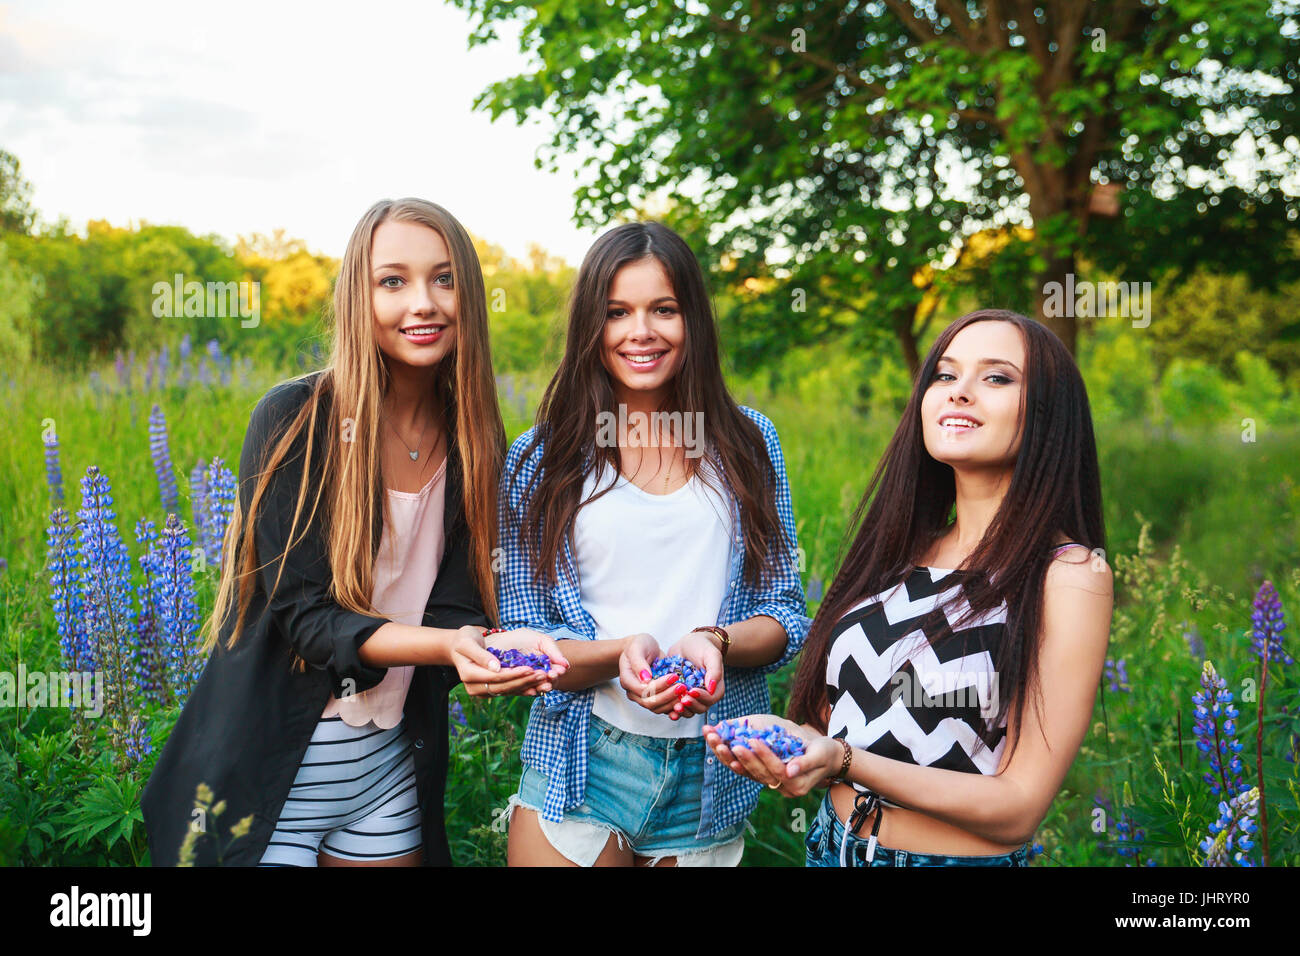 Ritratto di sorridenti amici sul weekend all'aperto. Tre belle giovani ragazze felici migliori amici divertendosi, sorridere e ridere. Foto Stock